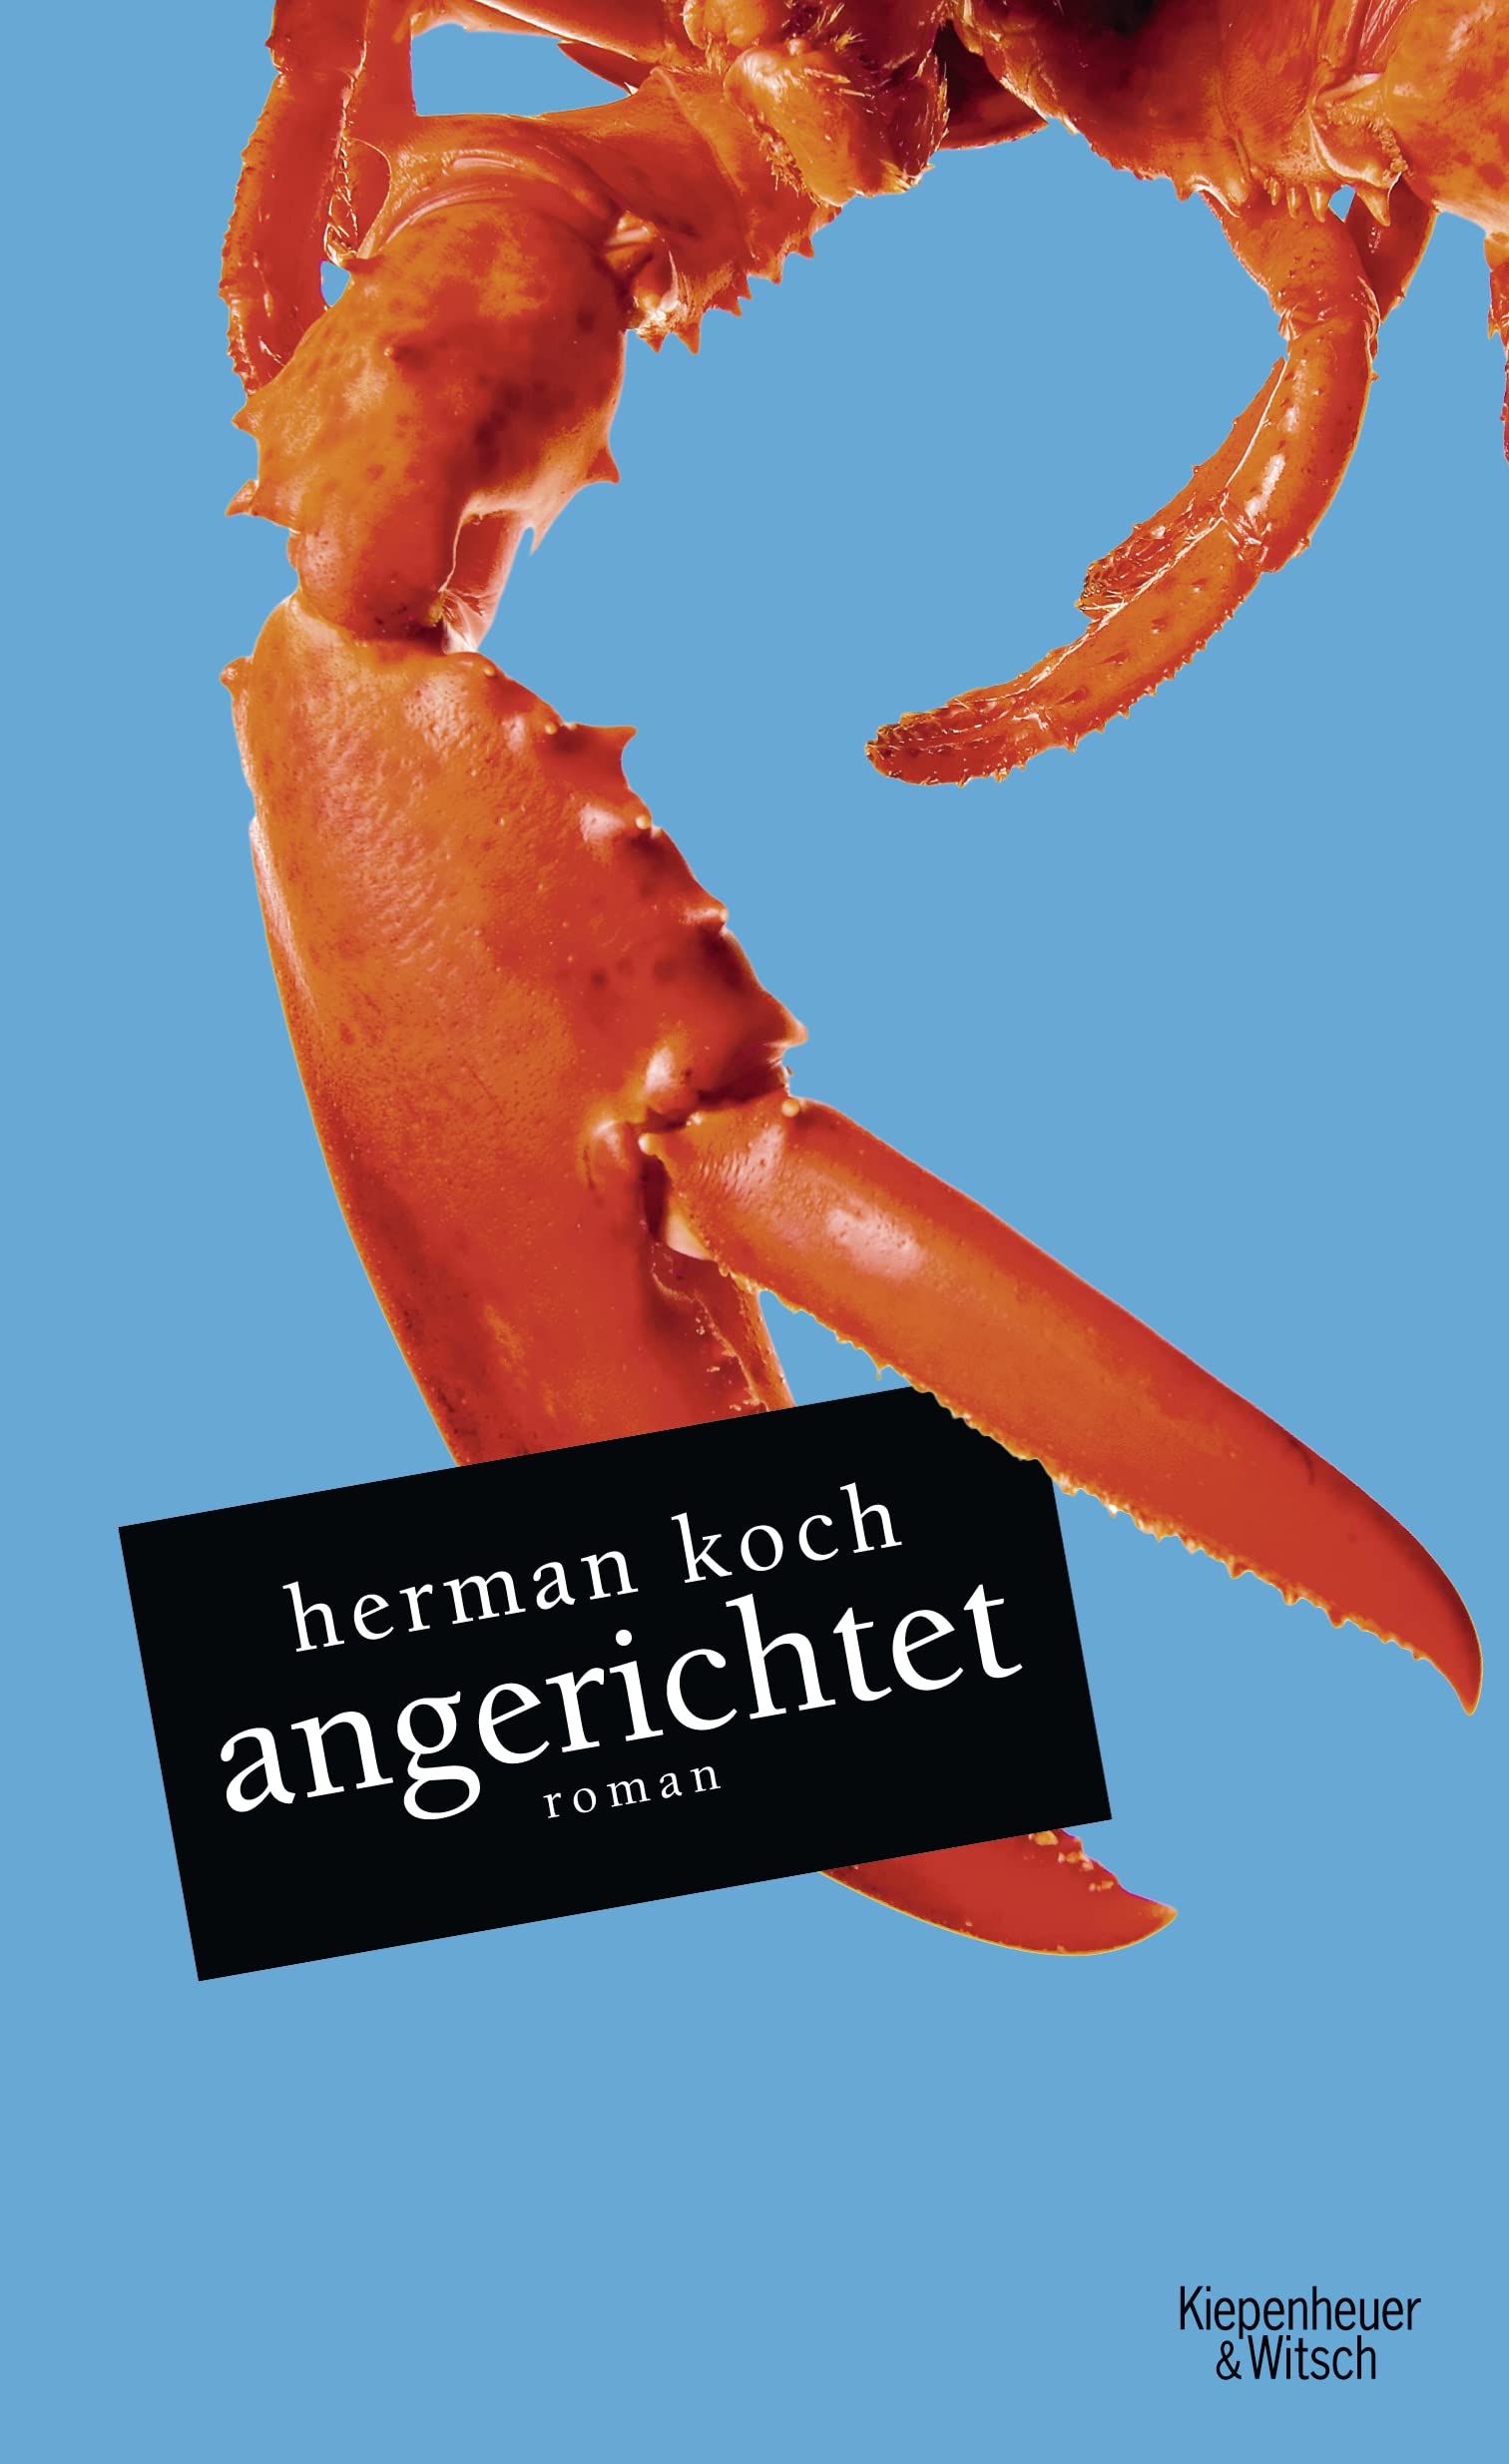 Herman Koch: Angerichtet (German language, 2010, Kiepenheuer & Witsch)